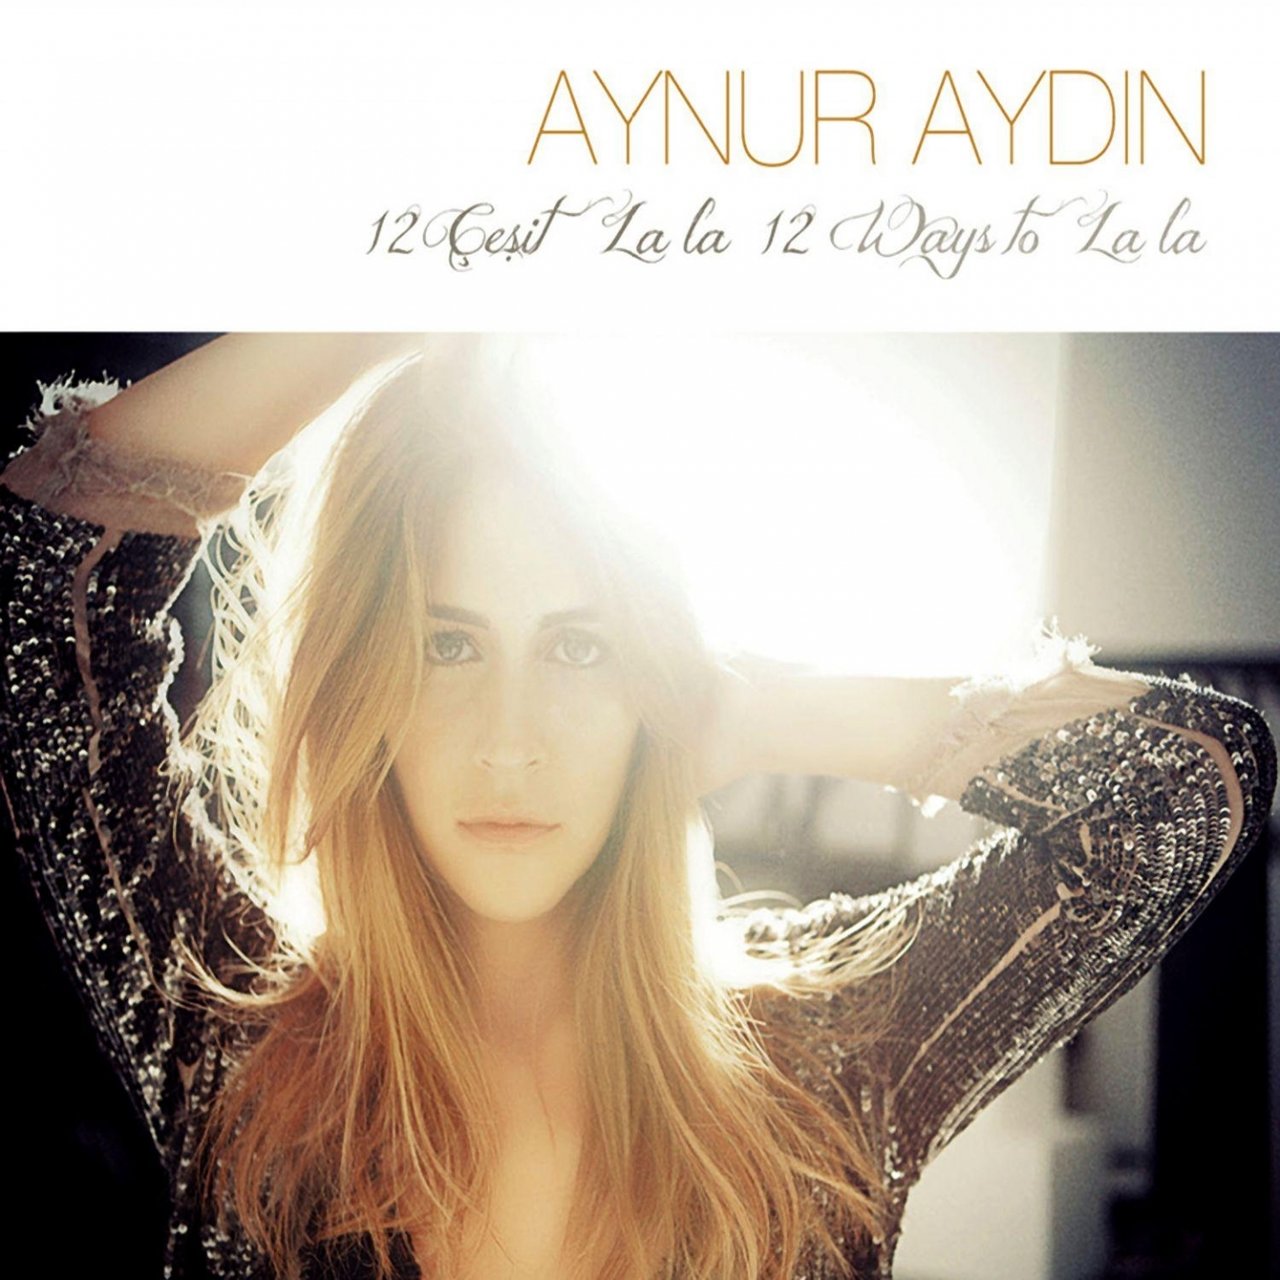 Aynur Aydın 12 Çeşit La La / 12 Ways to La La cover artwork